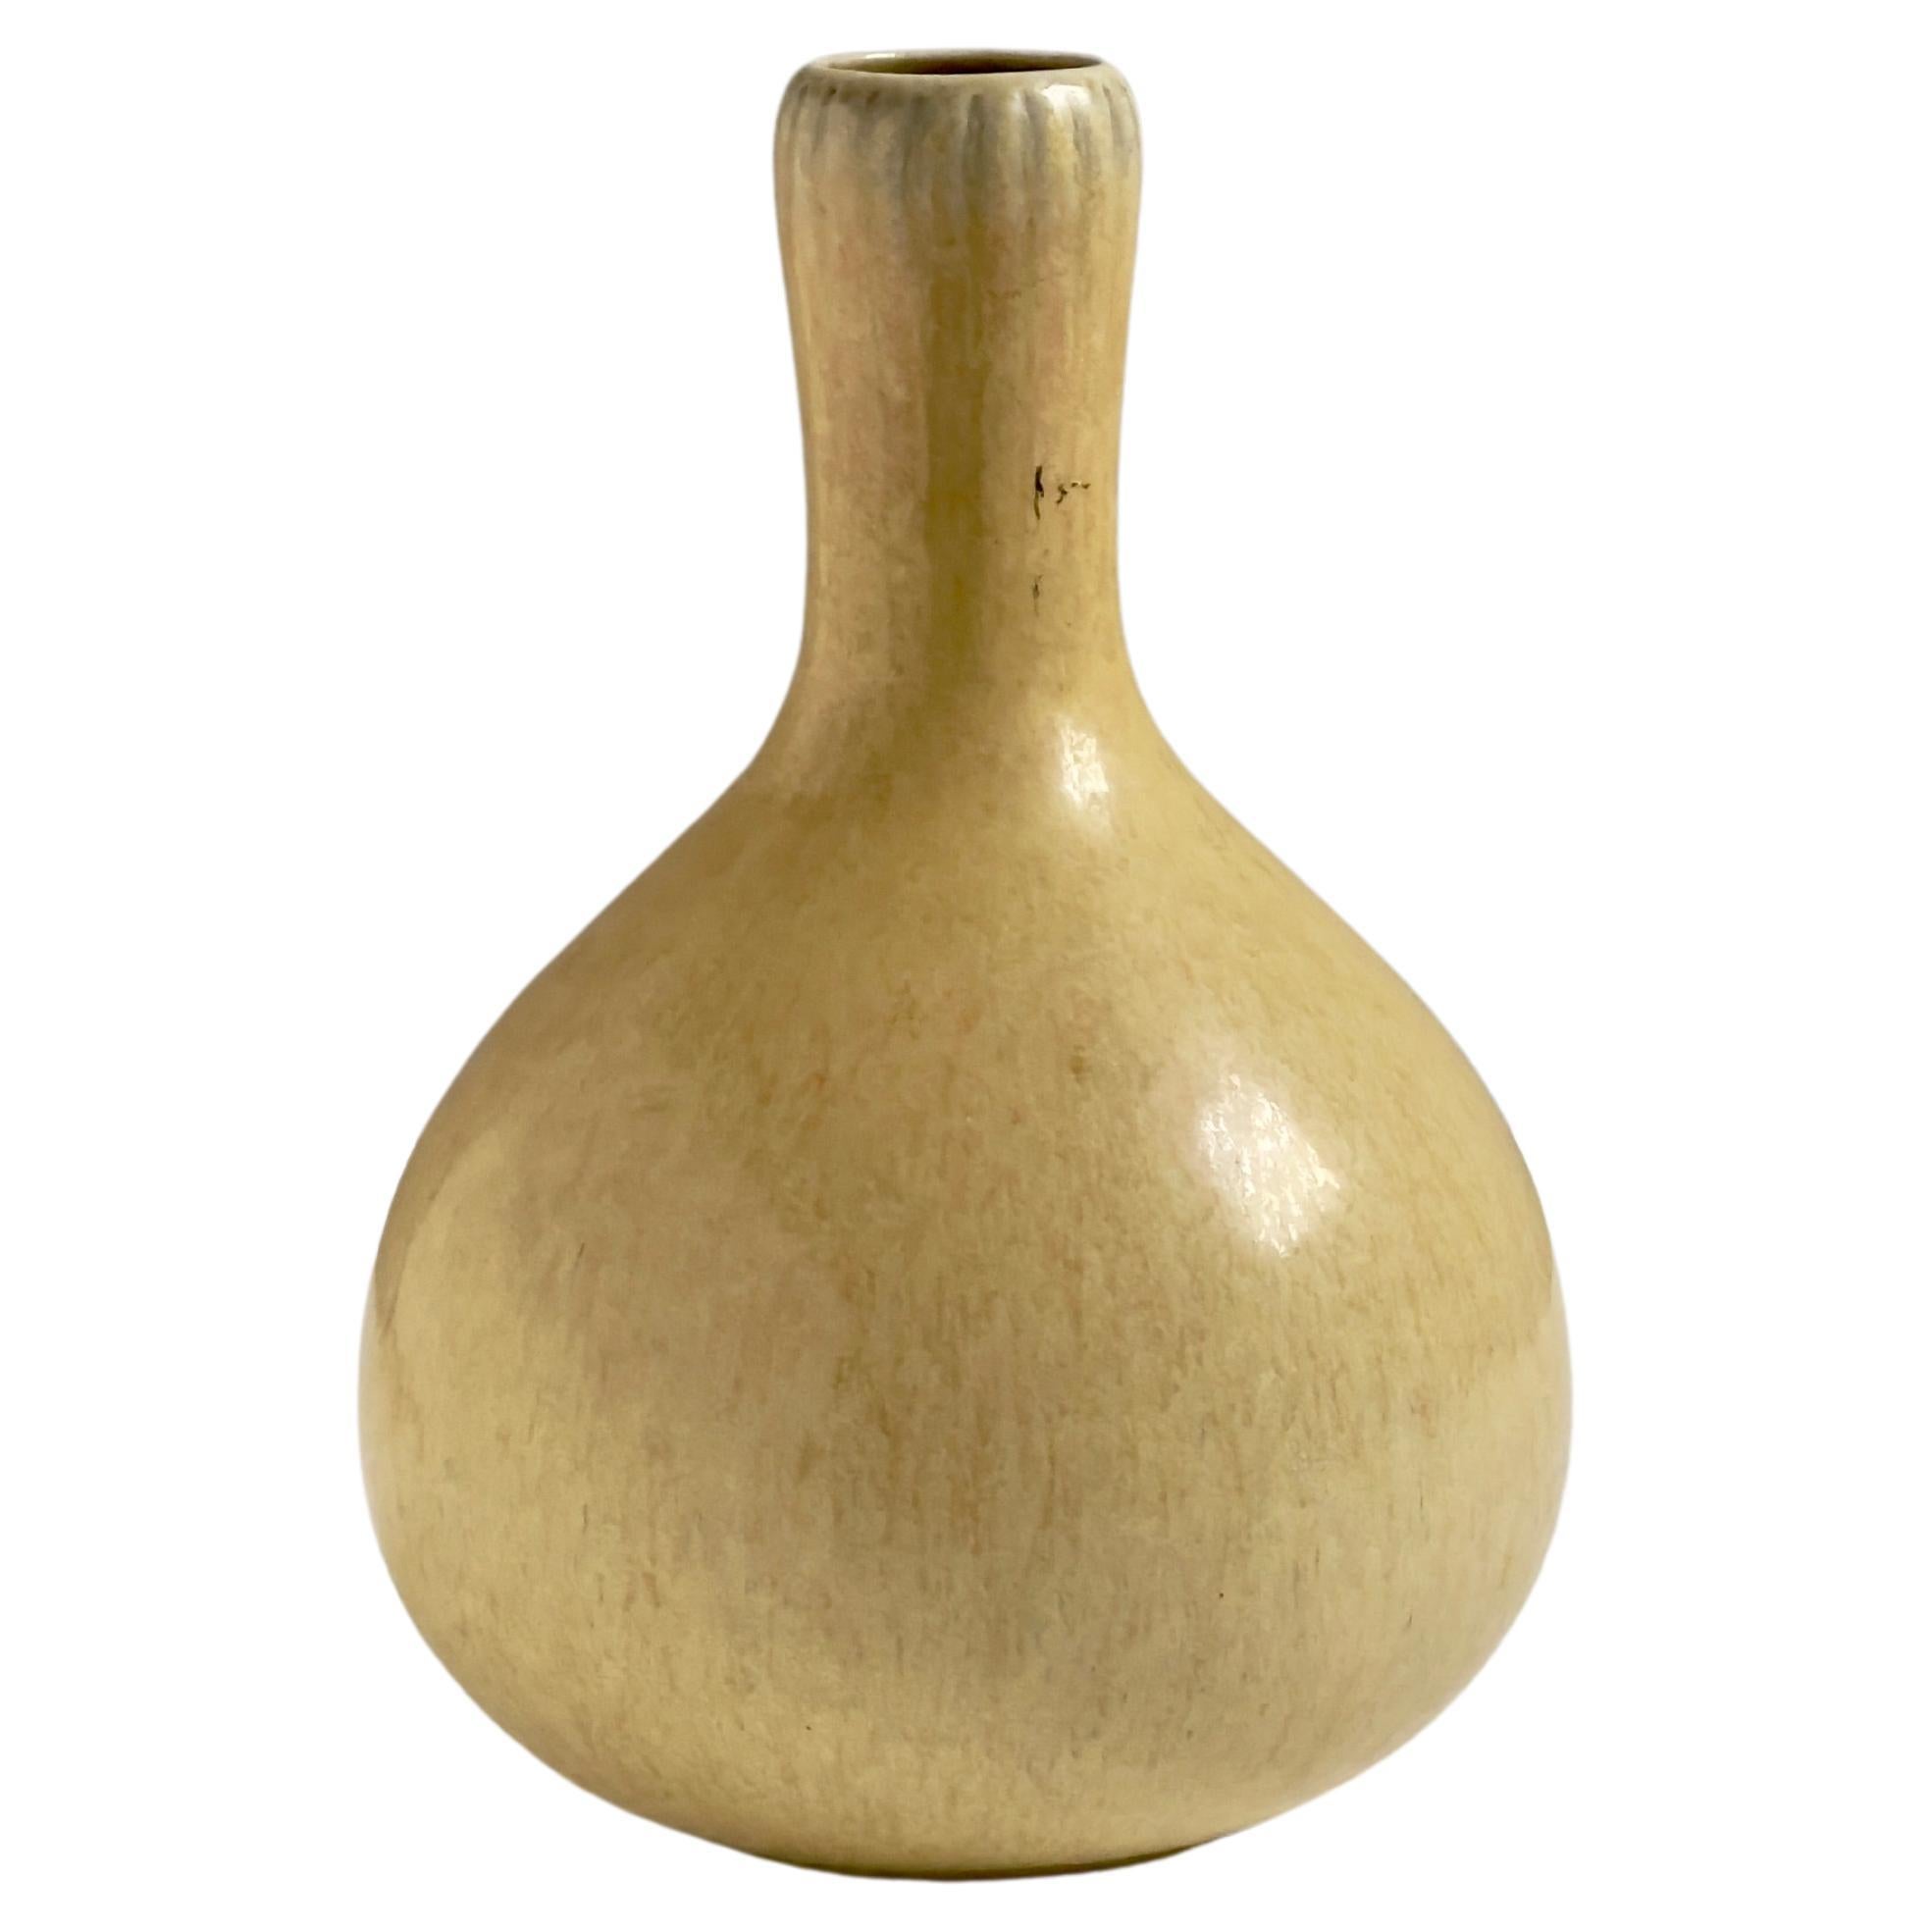 Narrow long necked vase in yellow glaze by Eva Stæhr Nielsen for Saxbo, Denmark